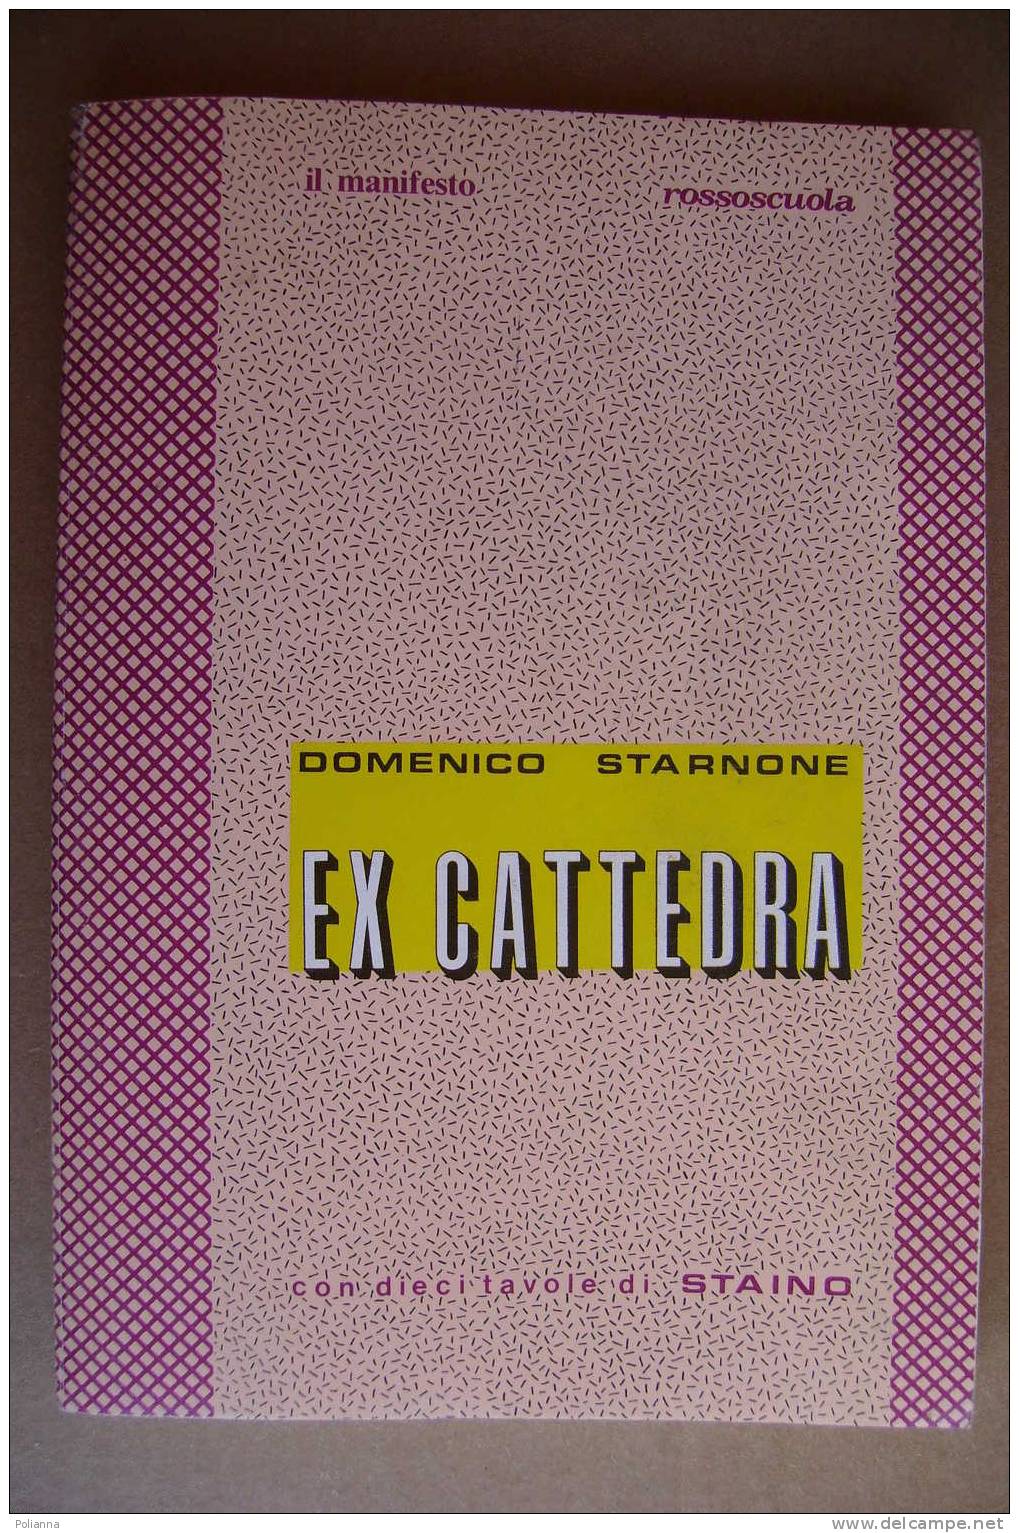 PAO/59 Starnone EX CATTEDRA Il Manifesto - Suppl. A Rossoscuola N.38/10 Tav. STAINO - Sociedad, Política, Economía